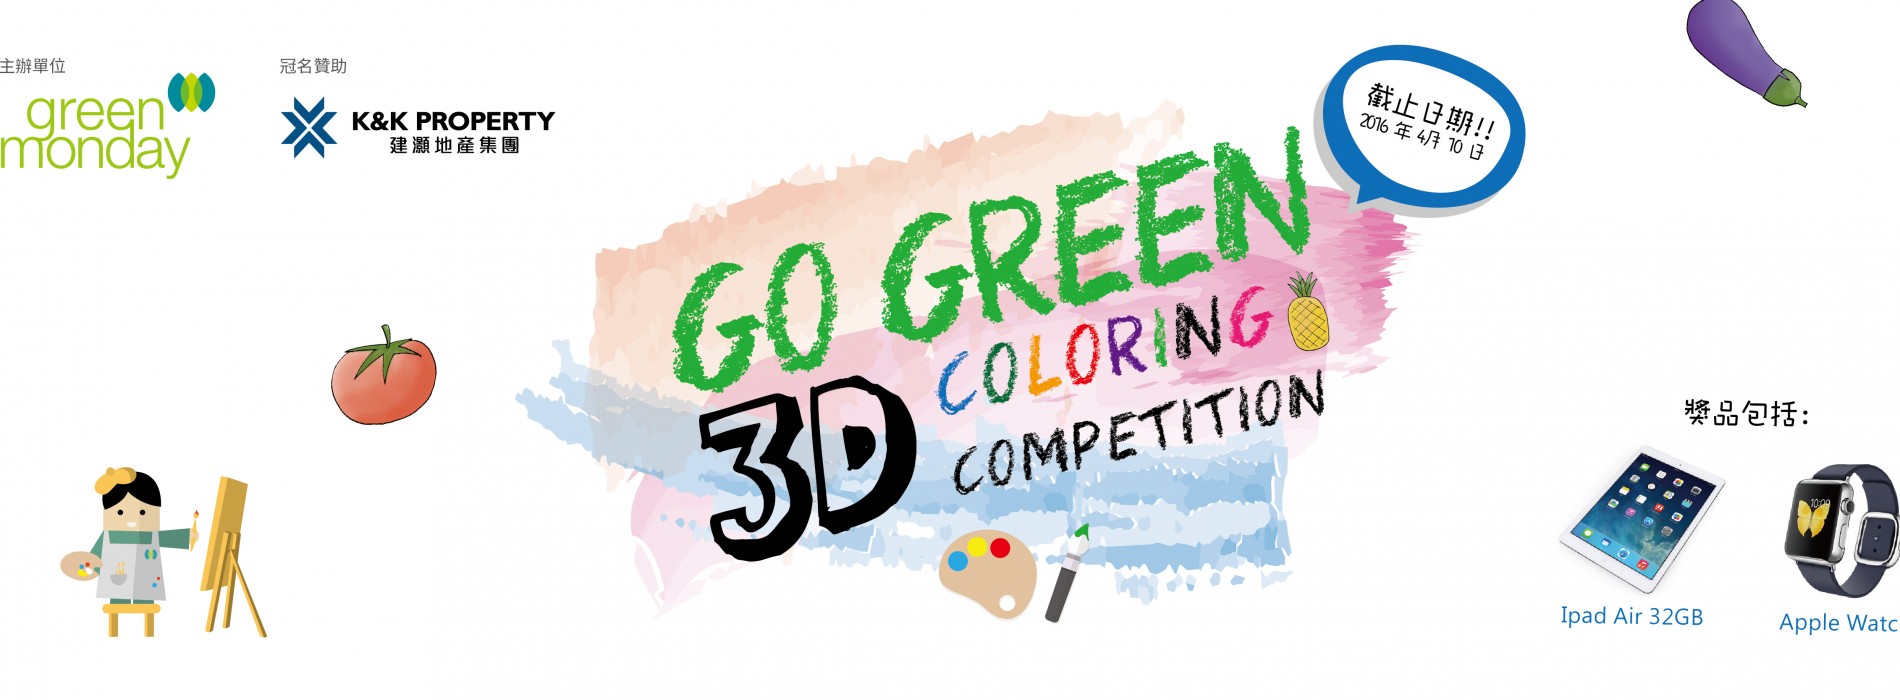 校園3D填色比賽 Go Green 3D Coloring Competition [截止日期：4月10日]